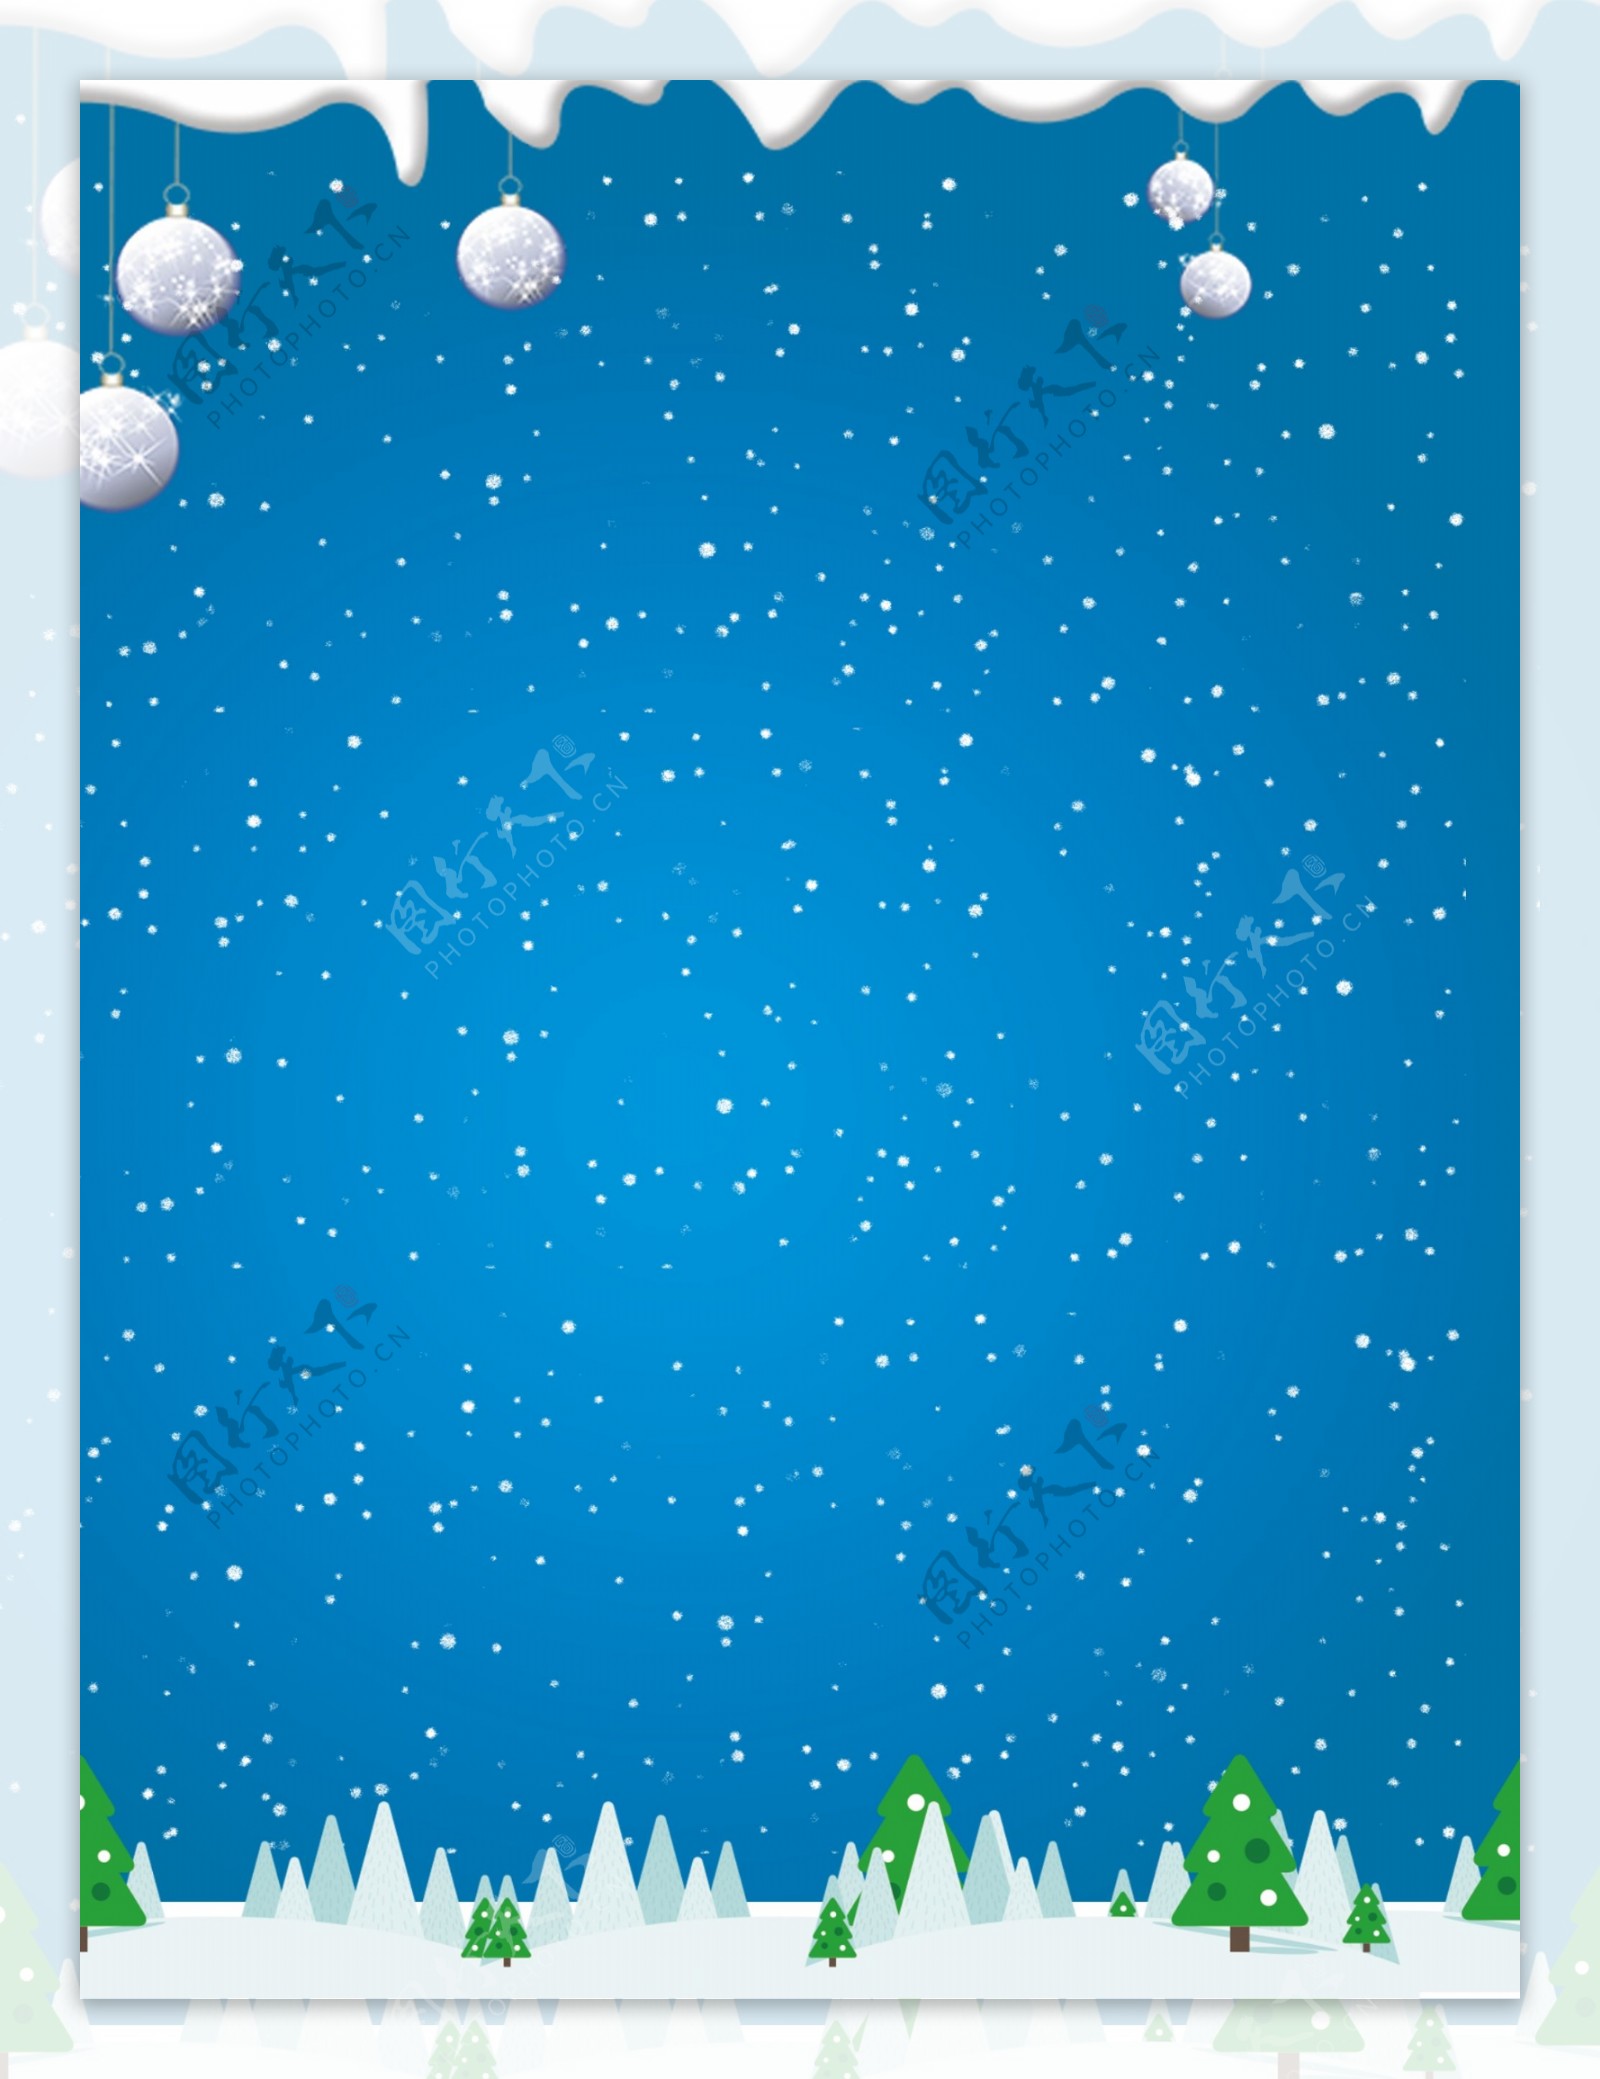 蓝色下雪圣诞节背景设计